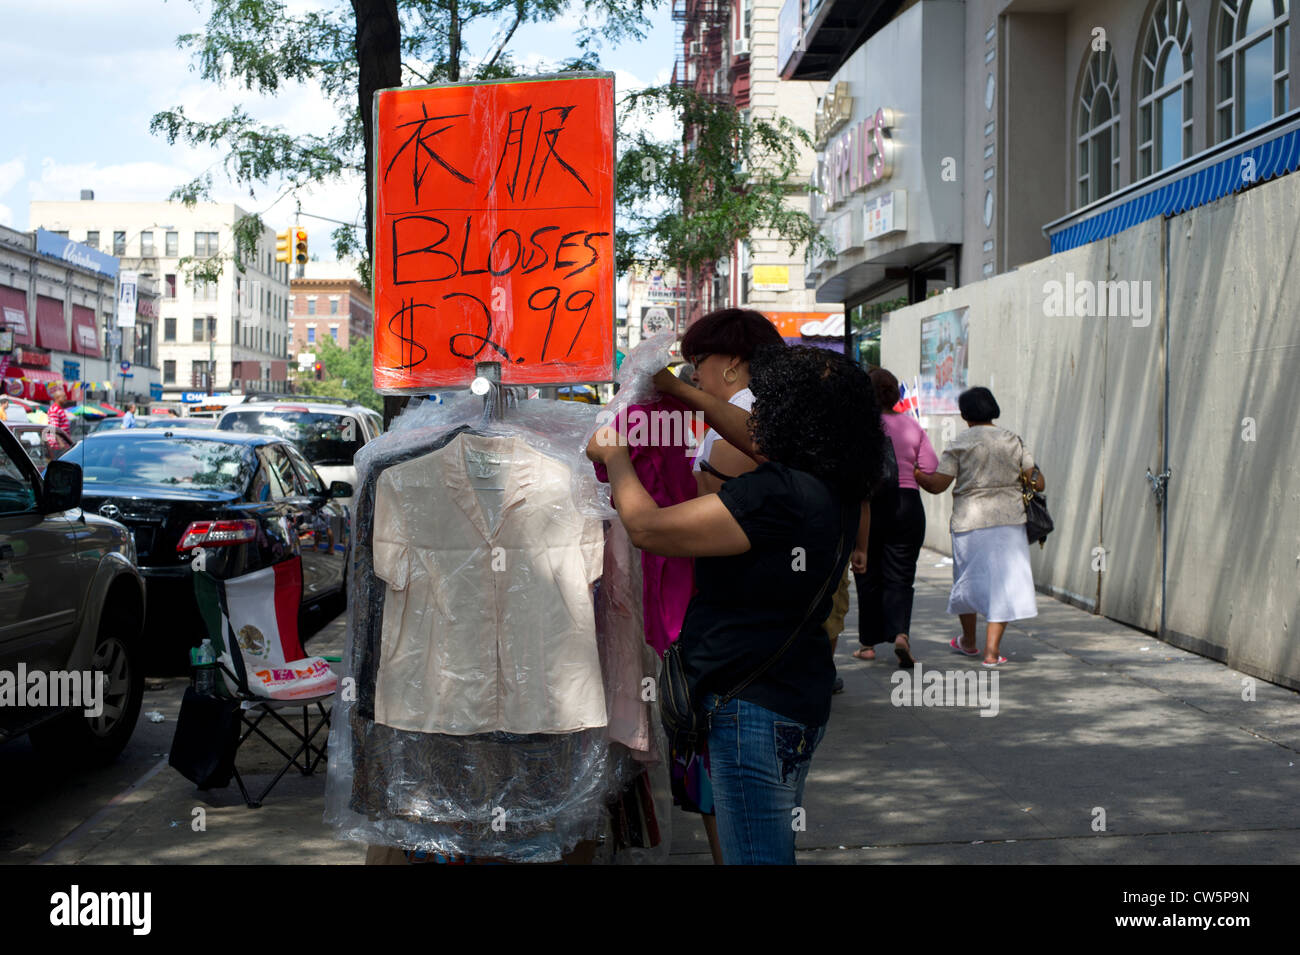 Leben auf der Straße und shopping in der in erster Linie Dominikanische New York Nachbarschaft Washington Heights Stockfoto